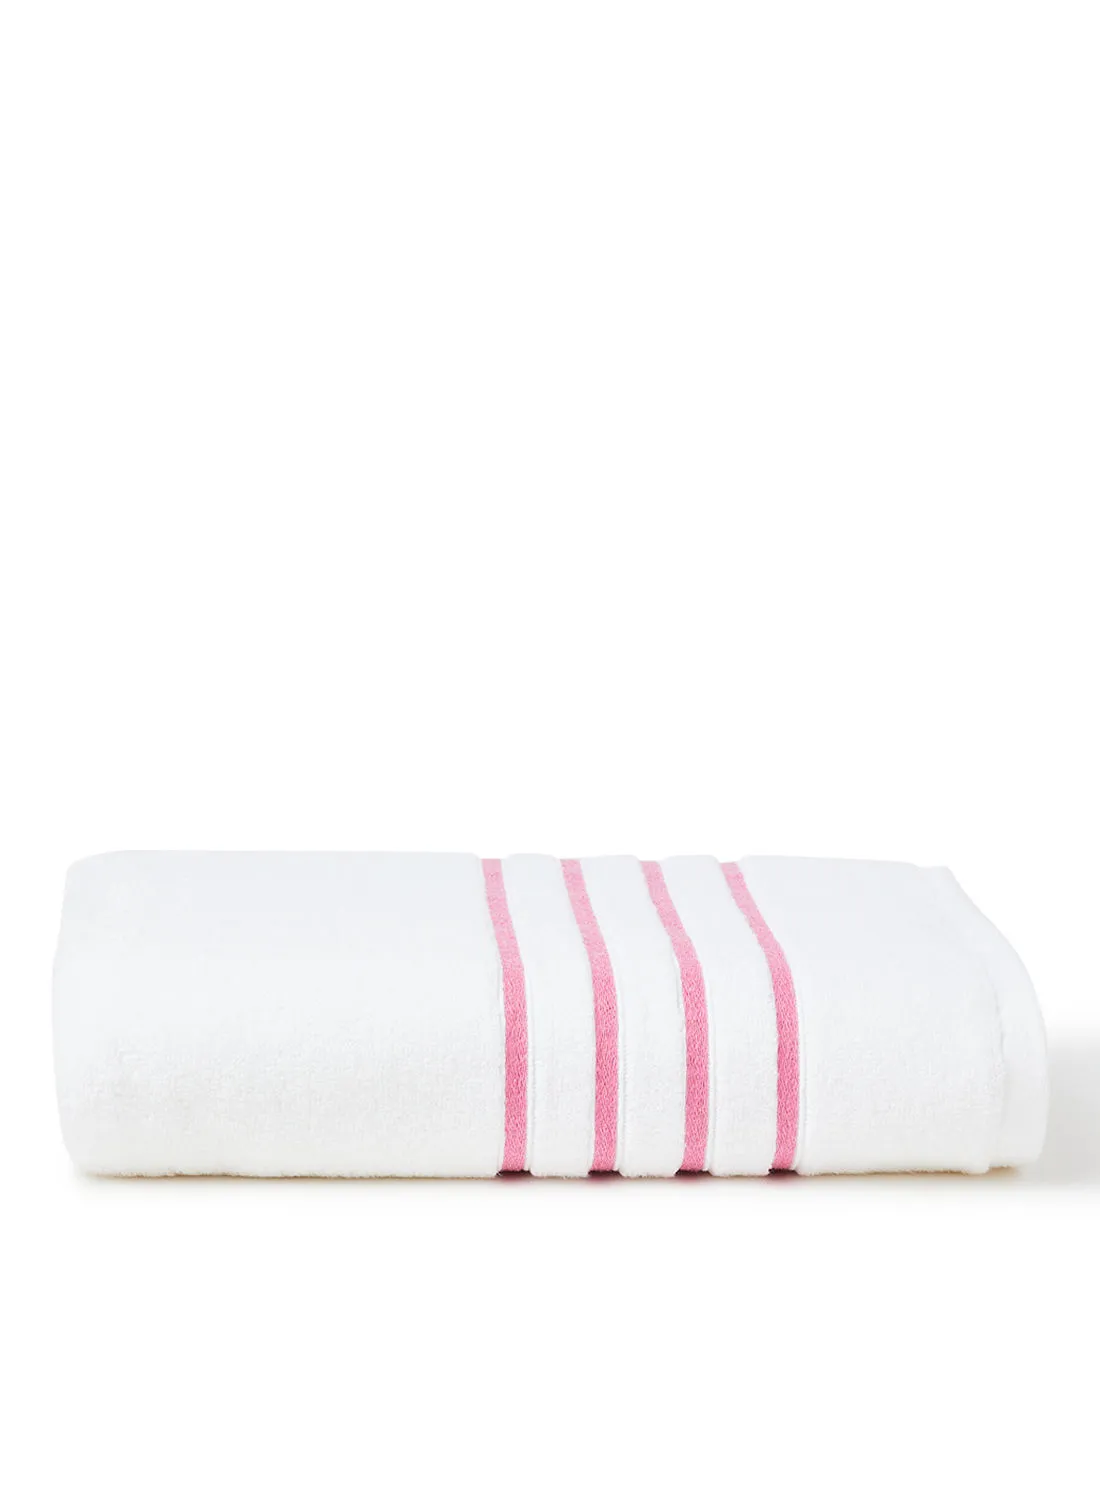 White Rose 100٪ Cotton Zero Twist 550 gsm مع ملاءة حمام ذات بطانة ملونة أبيض / وردي 80x160 سم